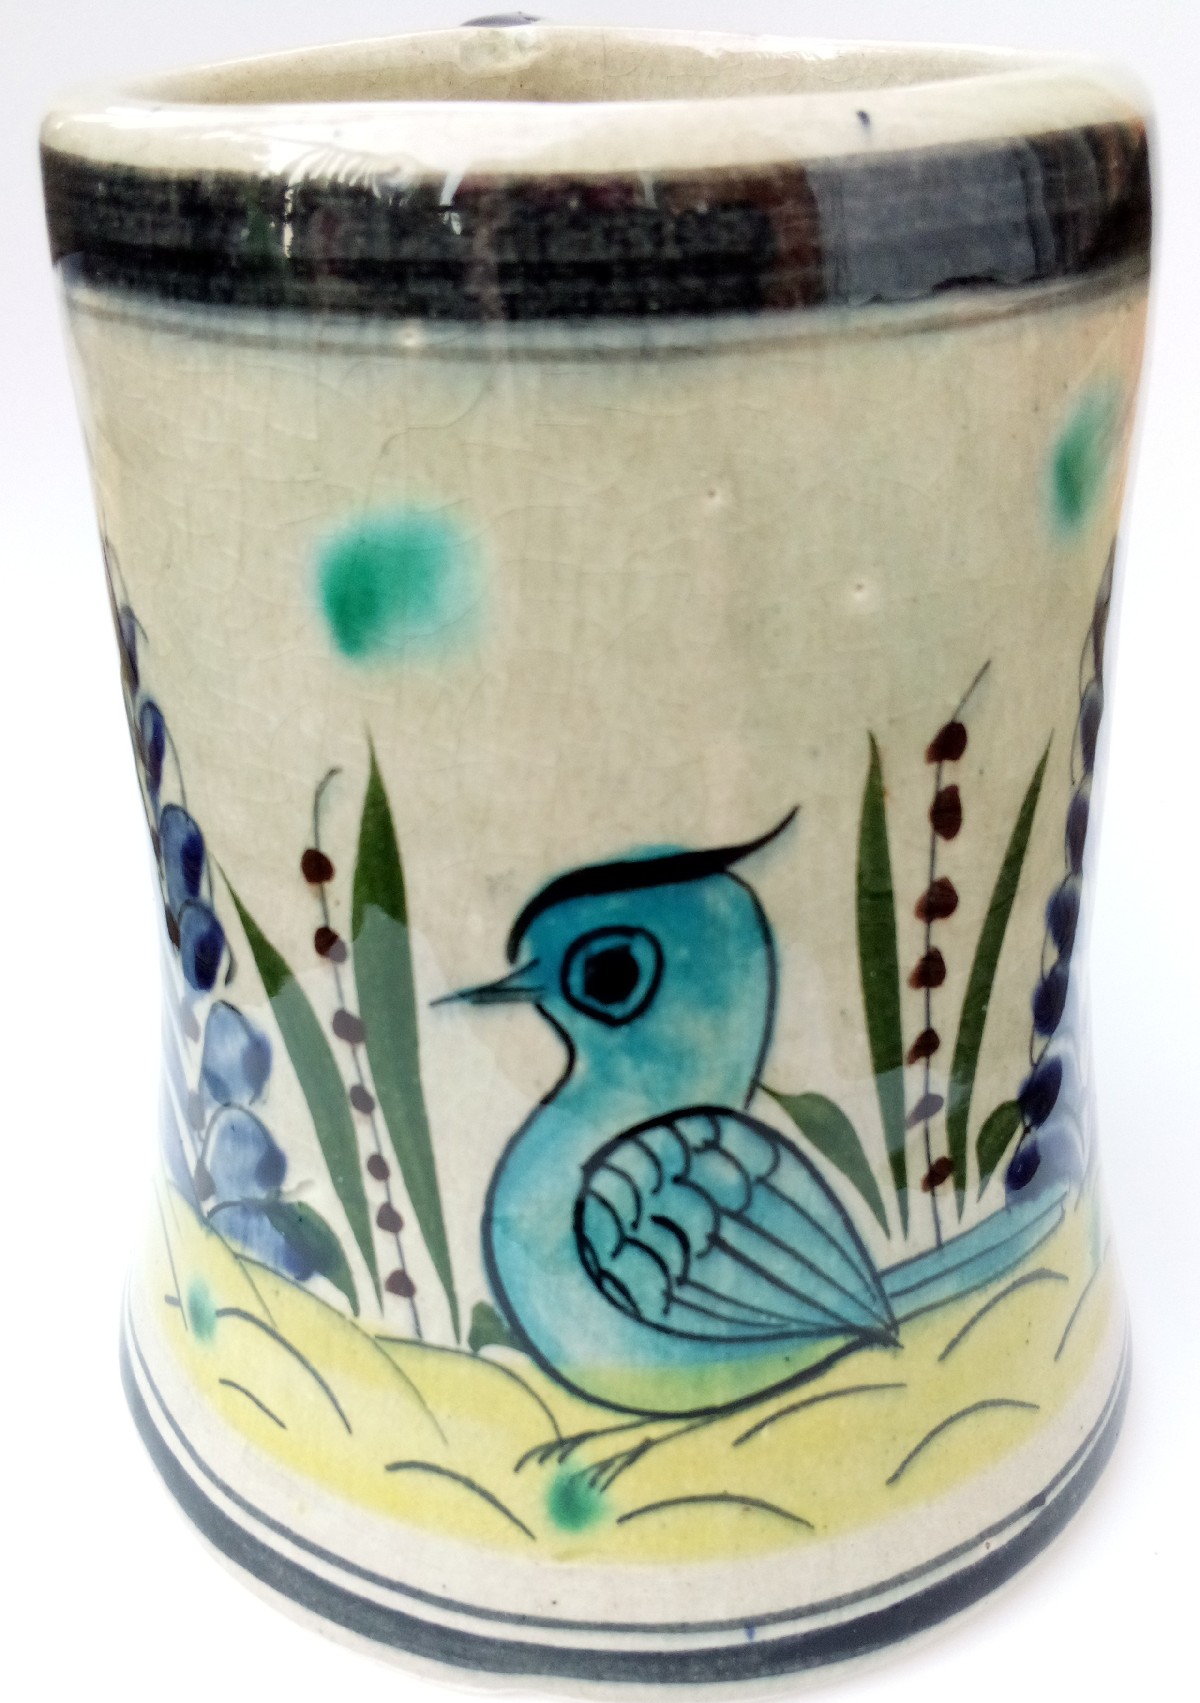 01a_pottery_bird_mug_marked_cat_Mexico.jpg